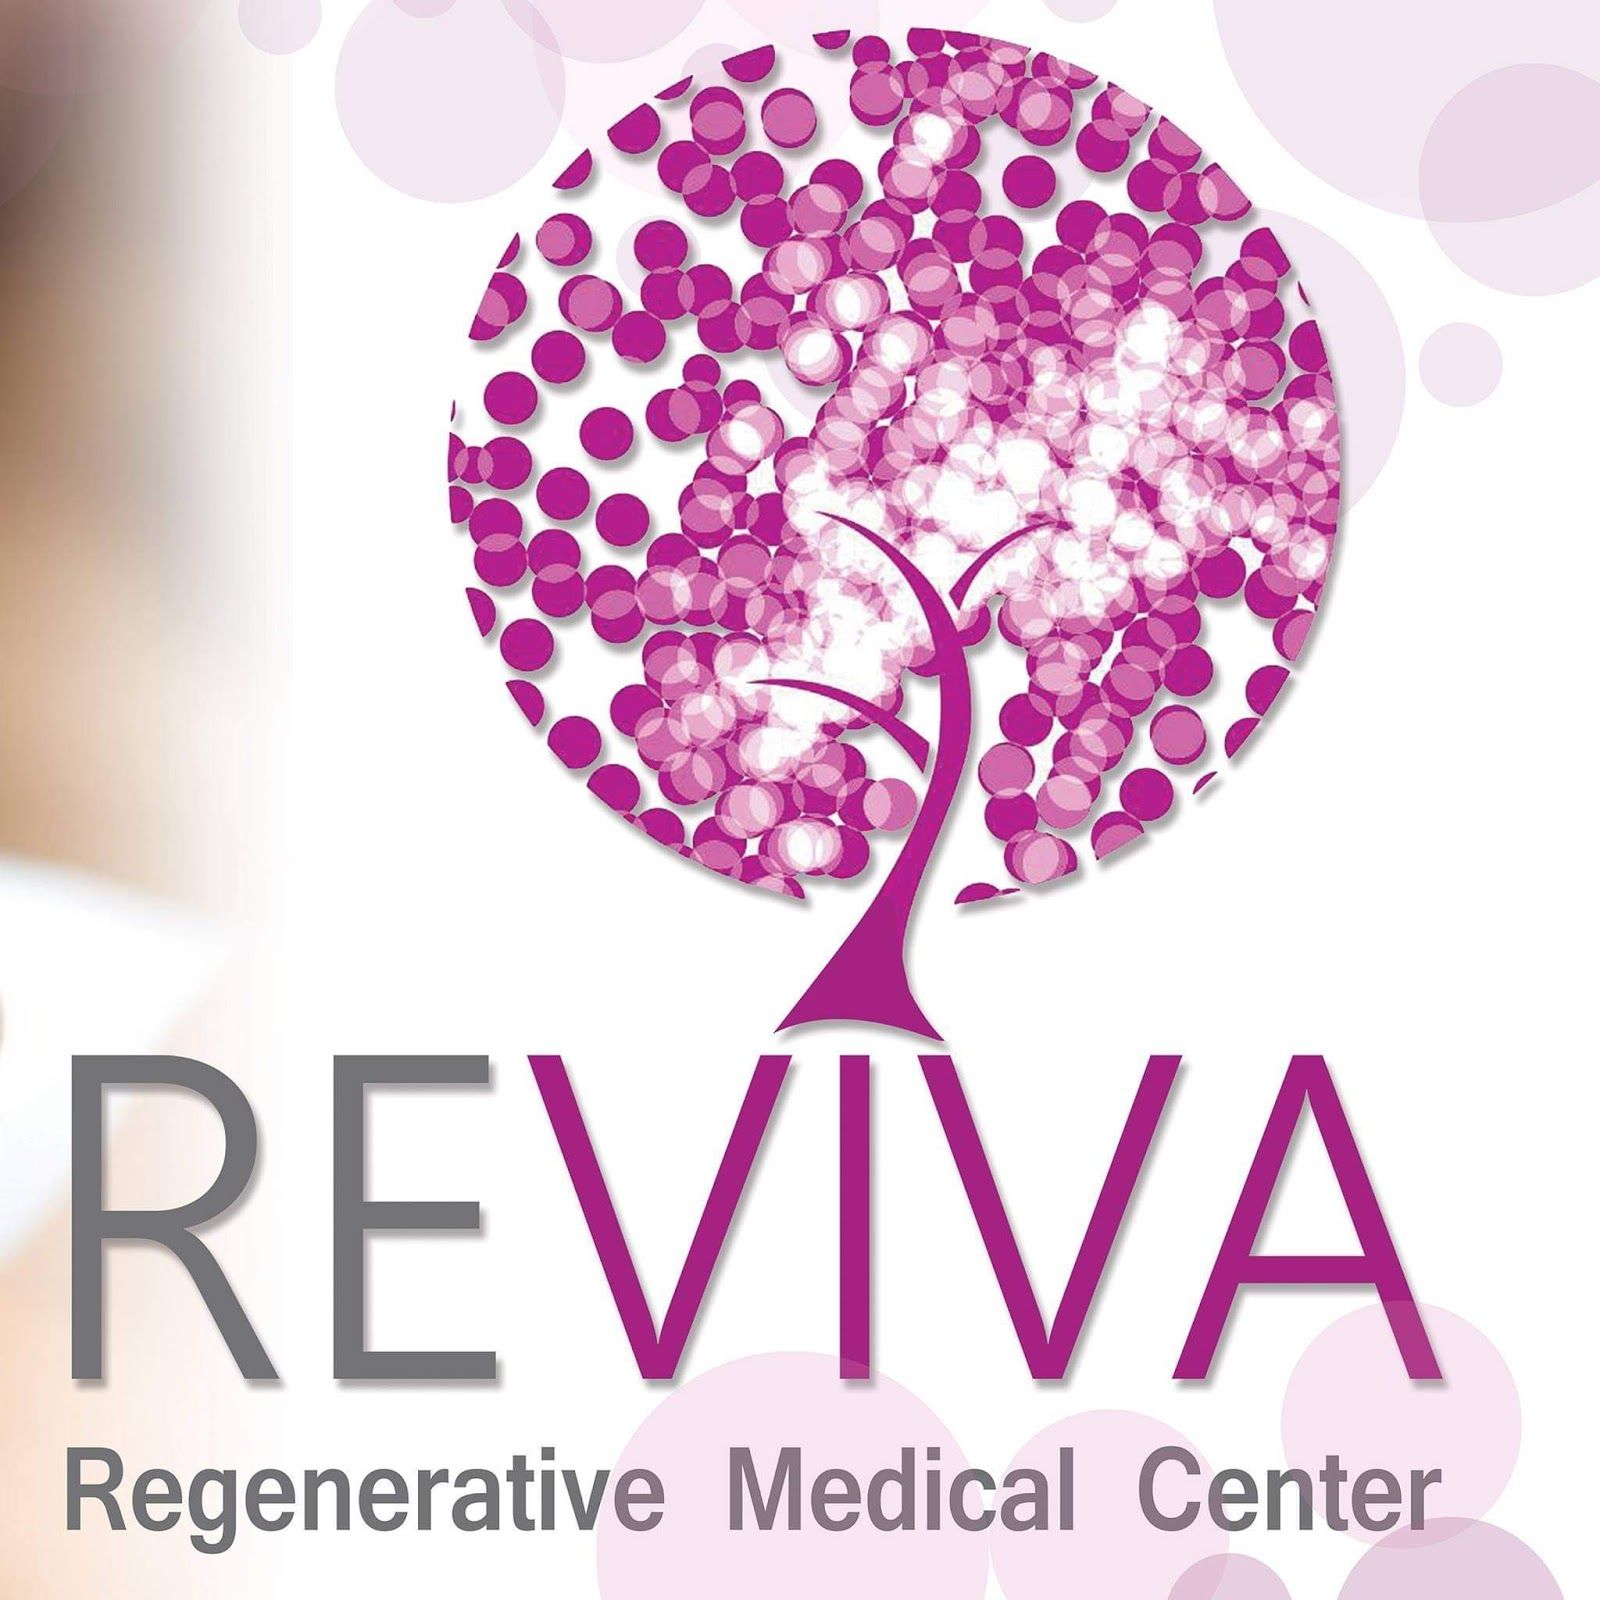 عيادة ريفيفا للأمراض الجلدية والتجميل والعلاج بالليزر